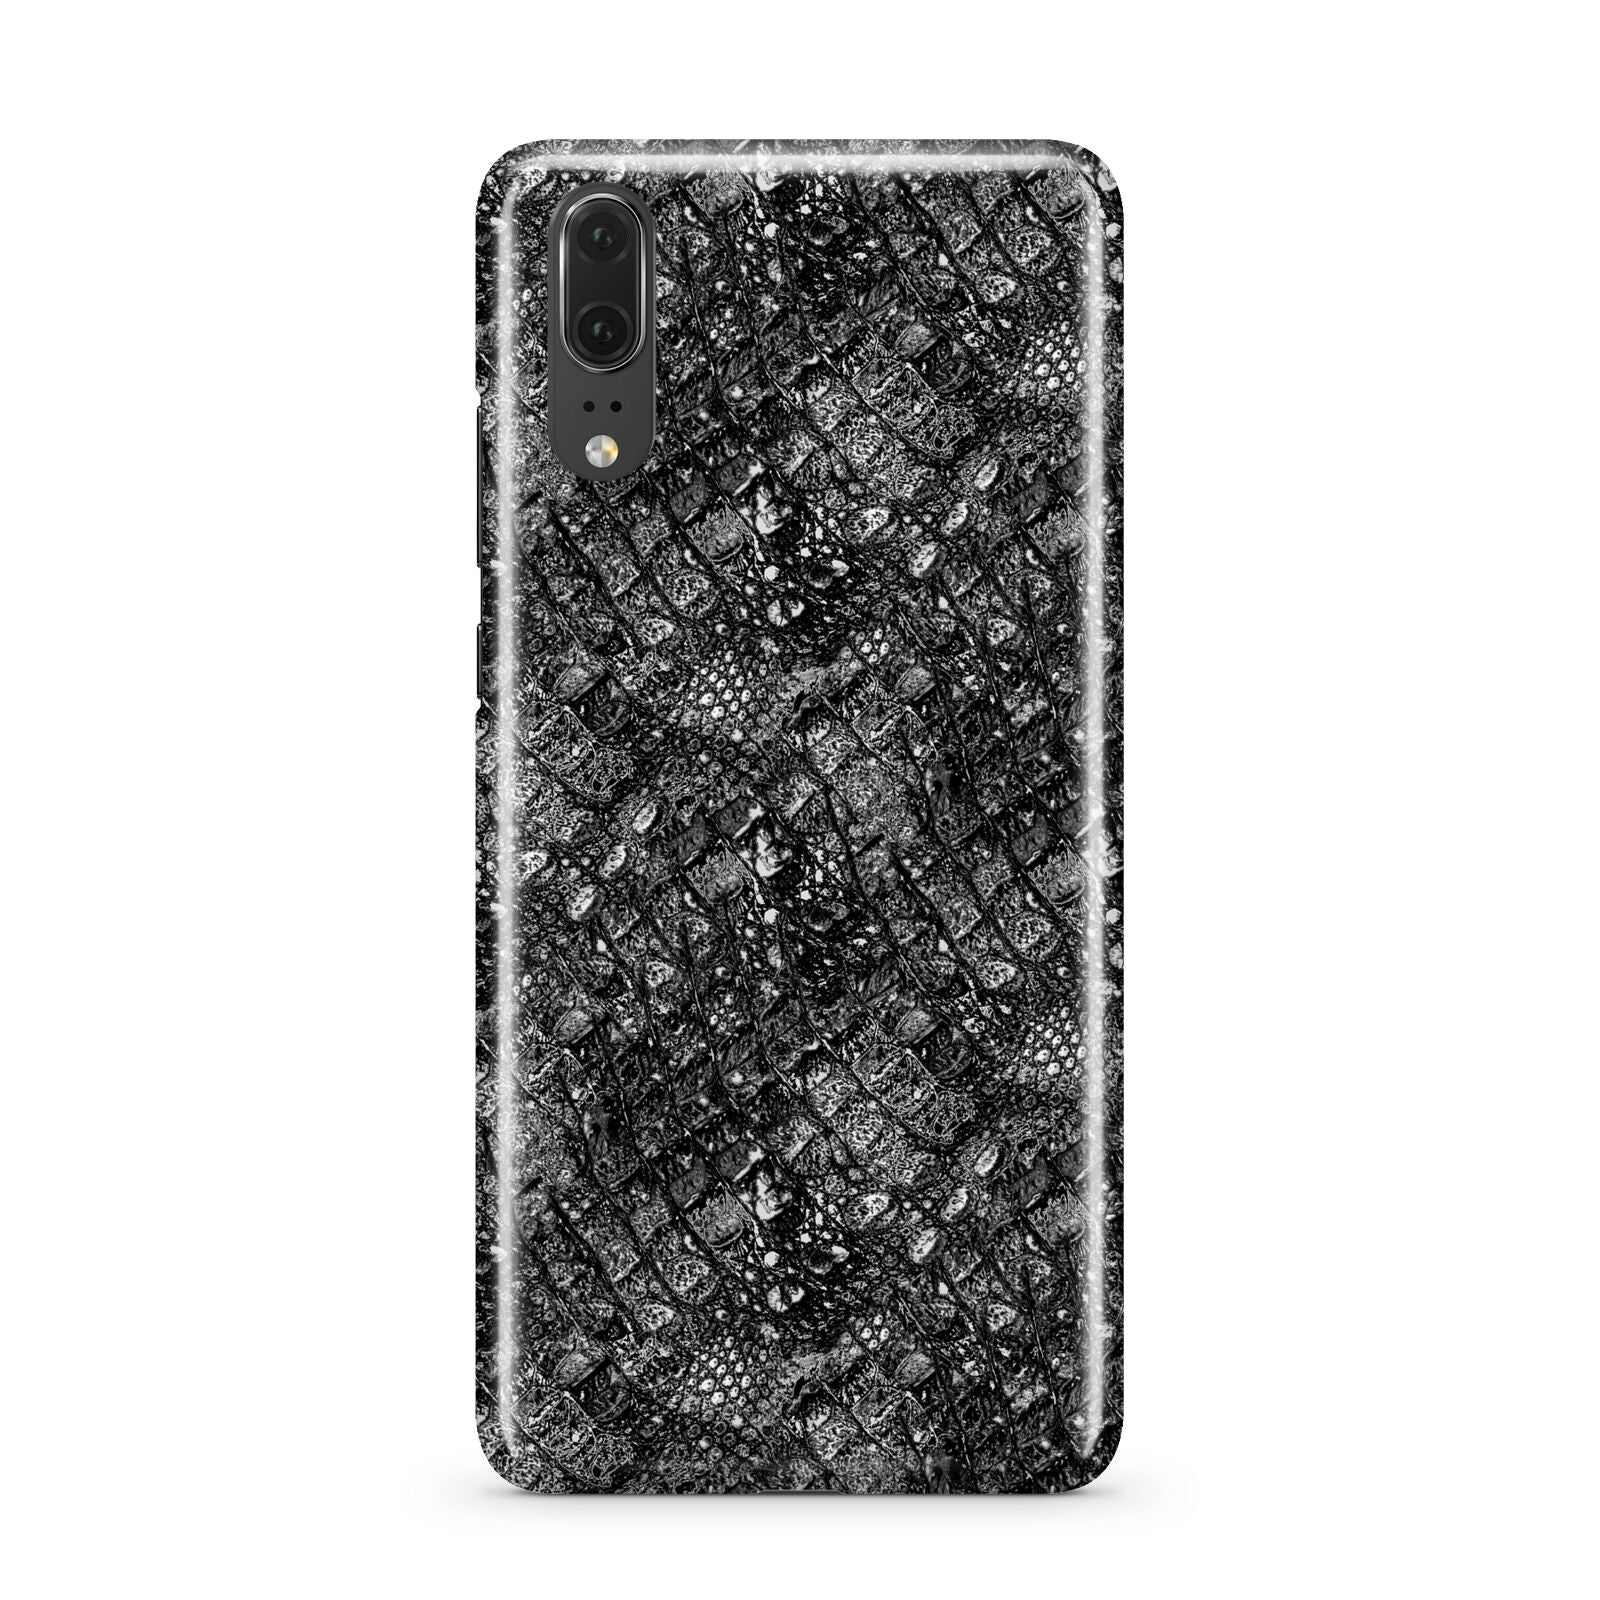 Snakeskin Design Huawei P20 Phone Case